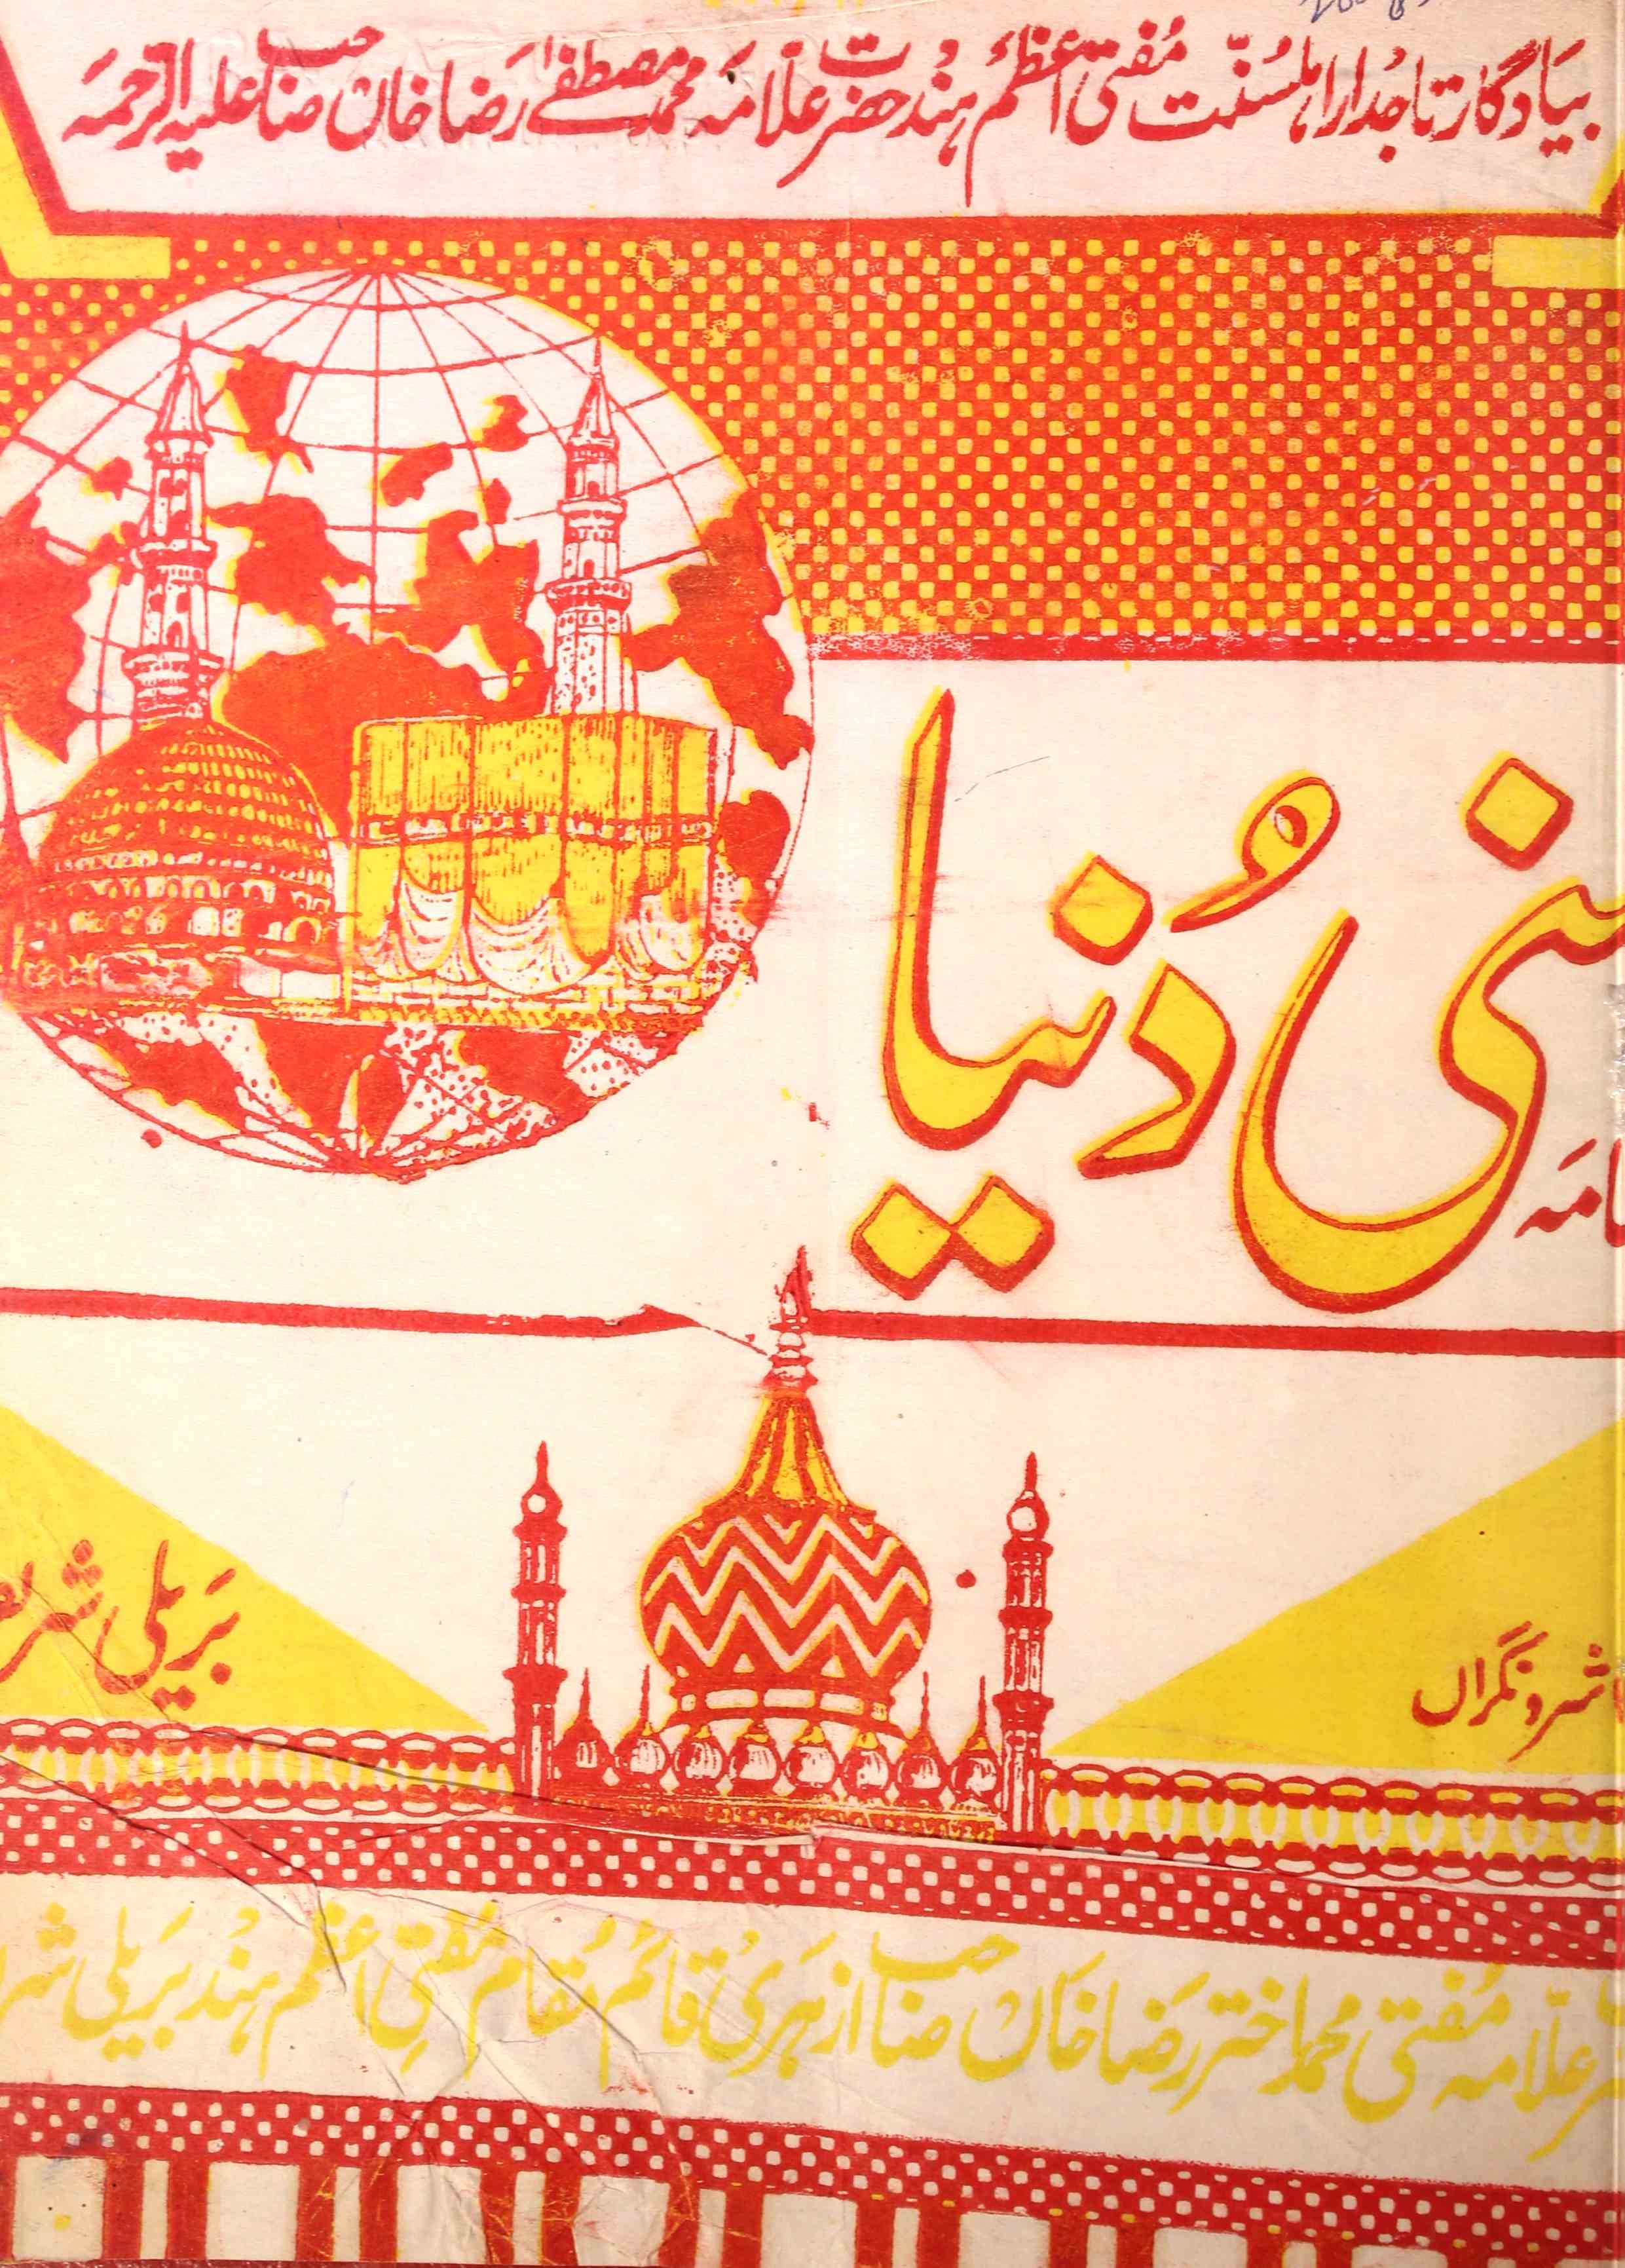 Sunni Dunia Jild 3 Shumara 33   Aug 1985